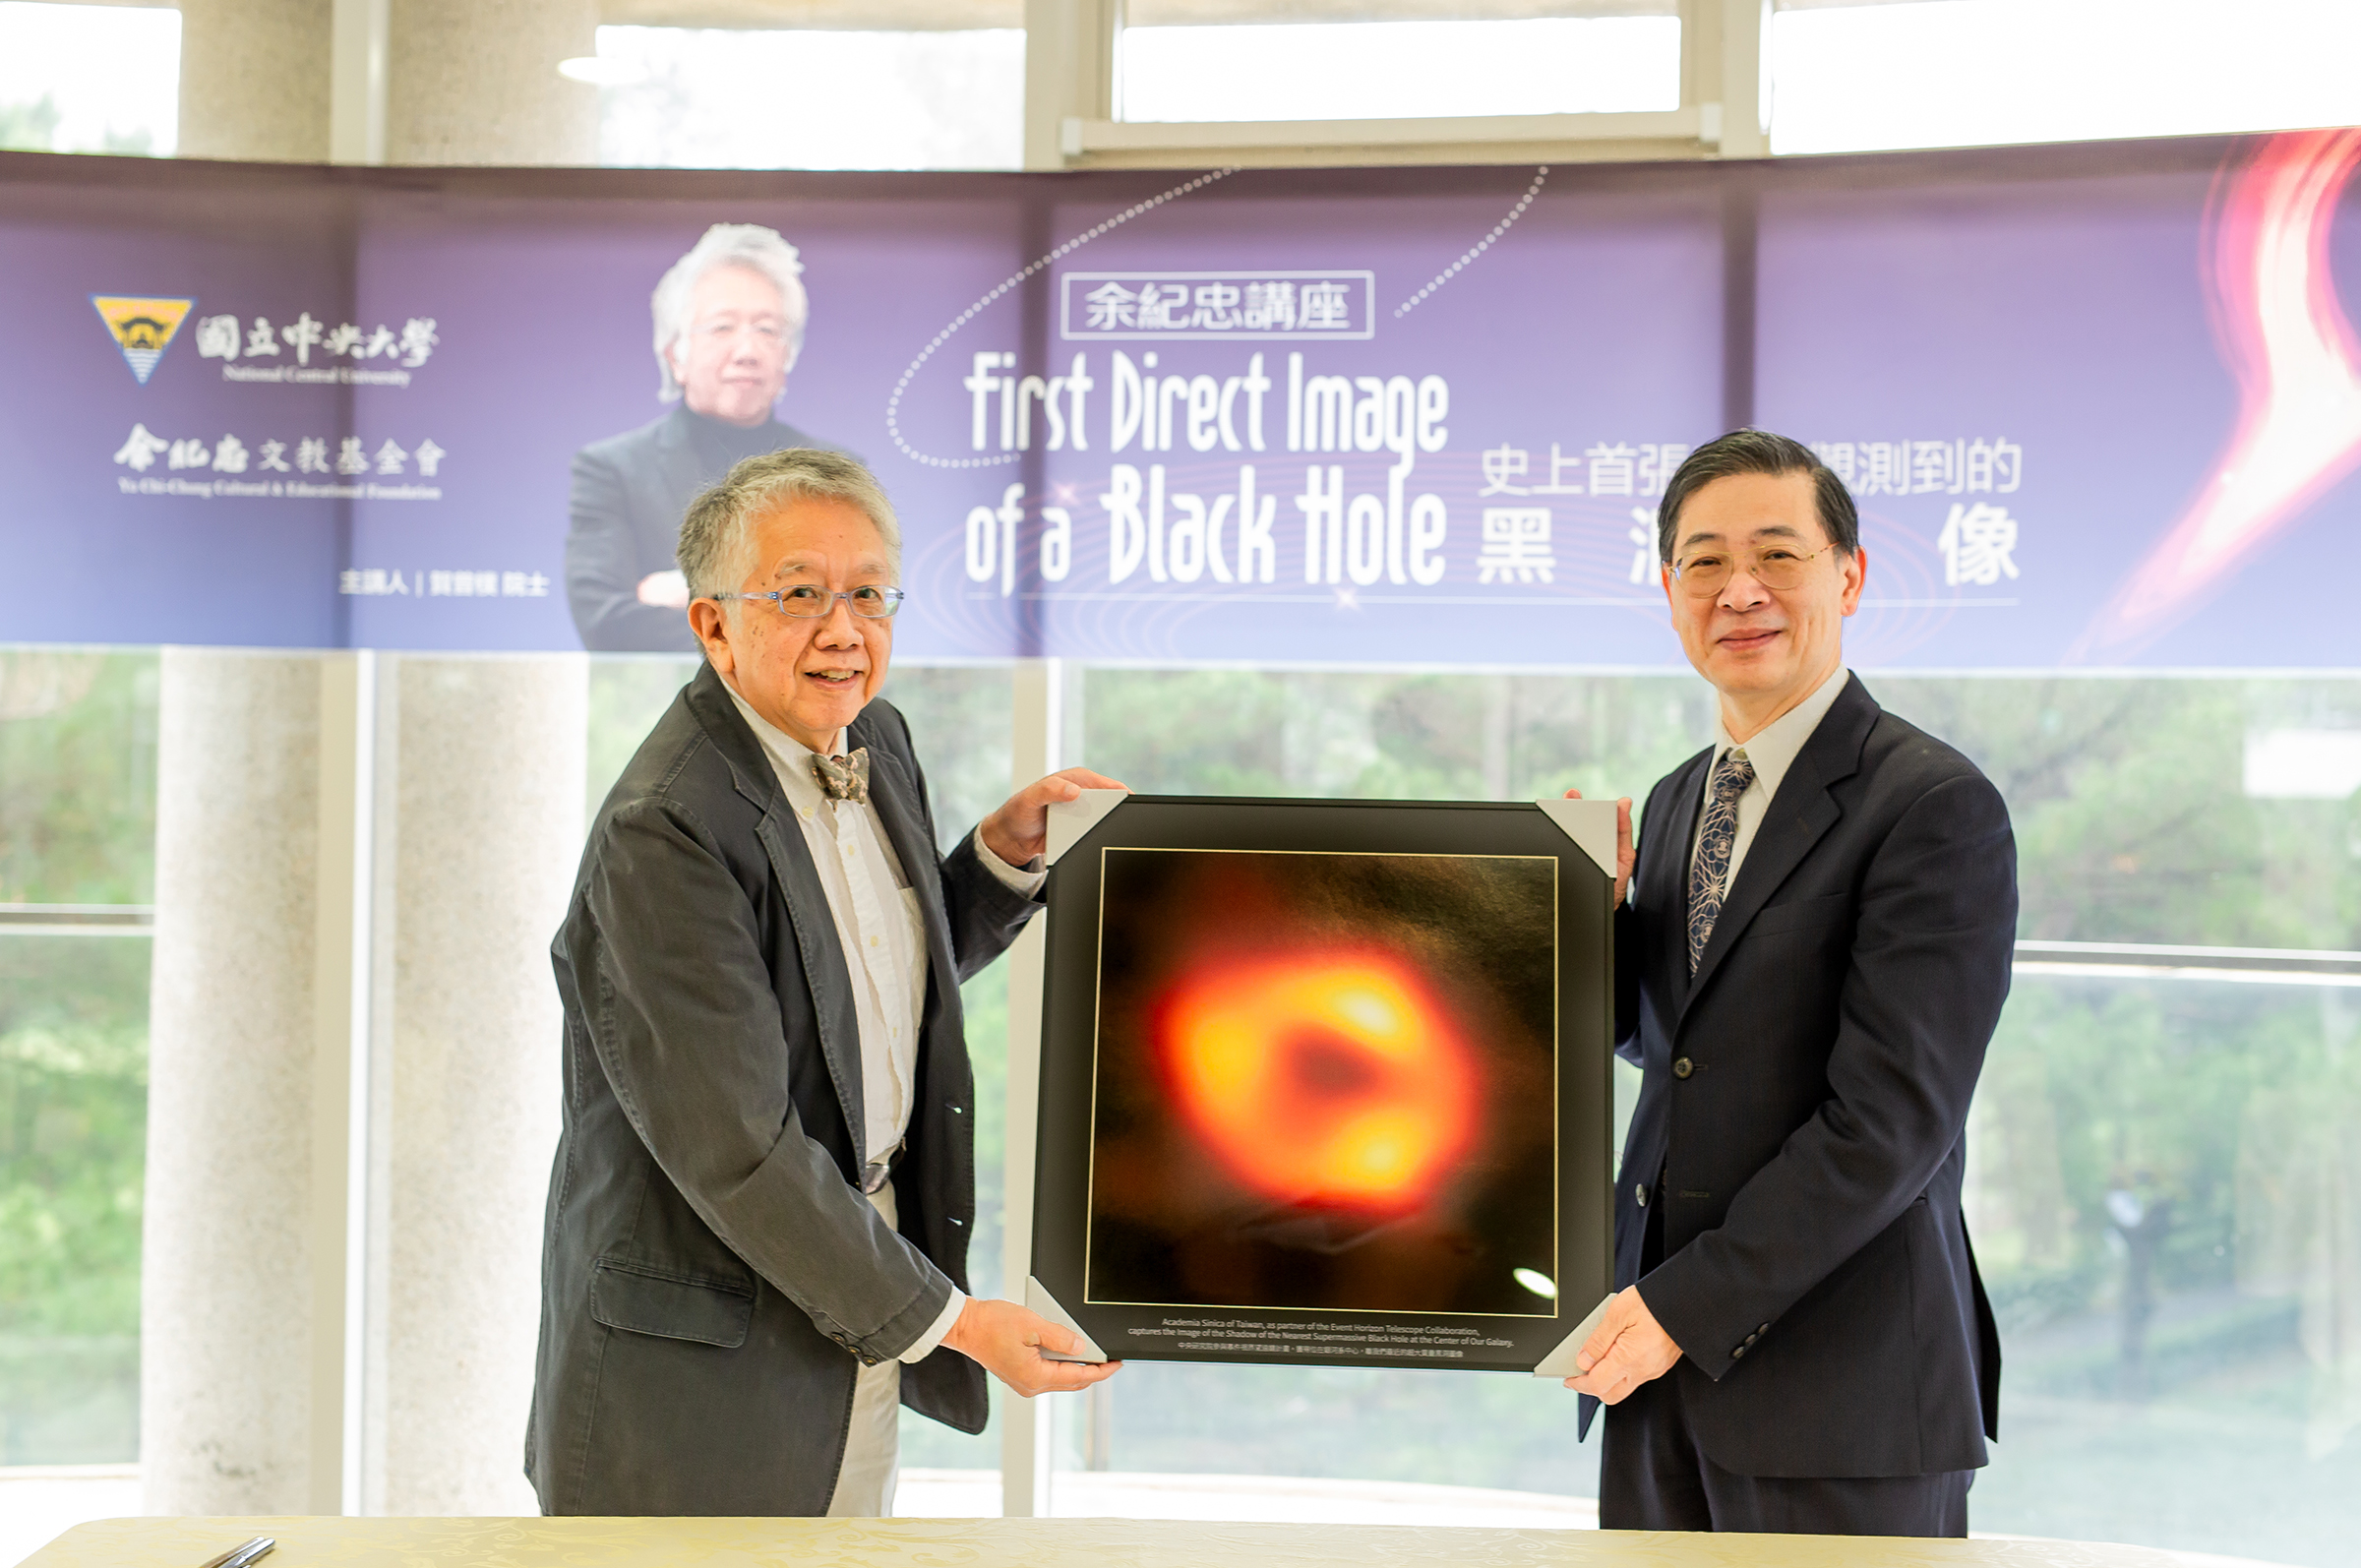 人類史上第一張黑洞影像，彌足珍貴，由賀曾樸院士（左）致贈給中央大學，由綦振瀛副校長（右）代表接受。郭時昇攝